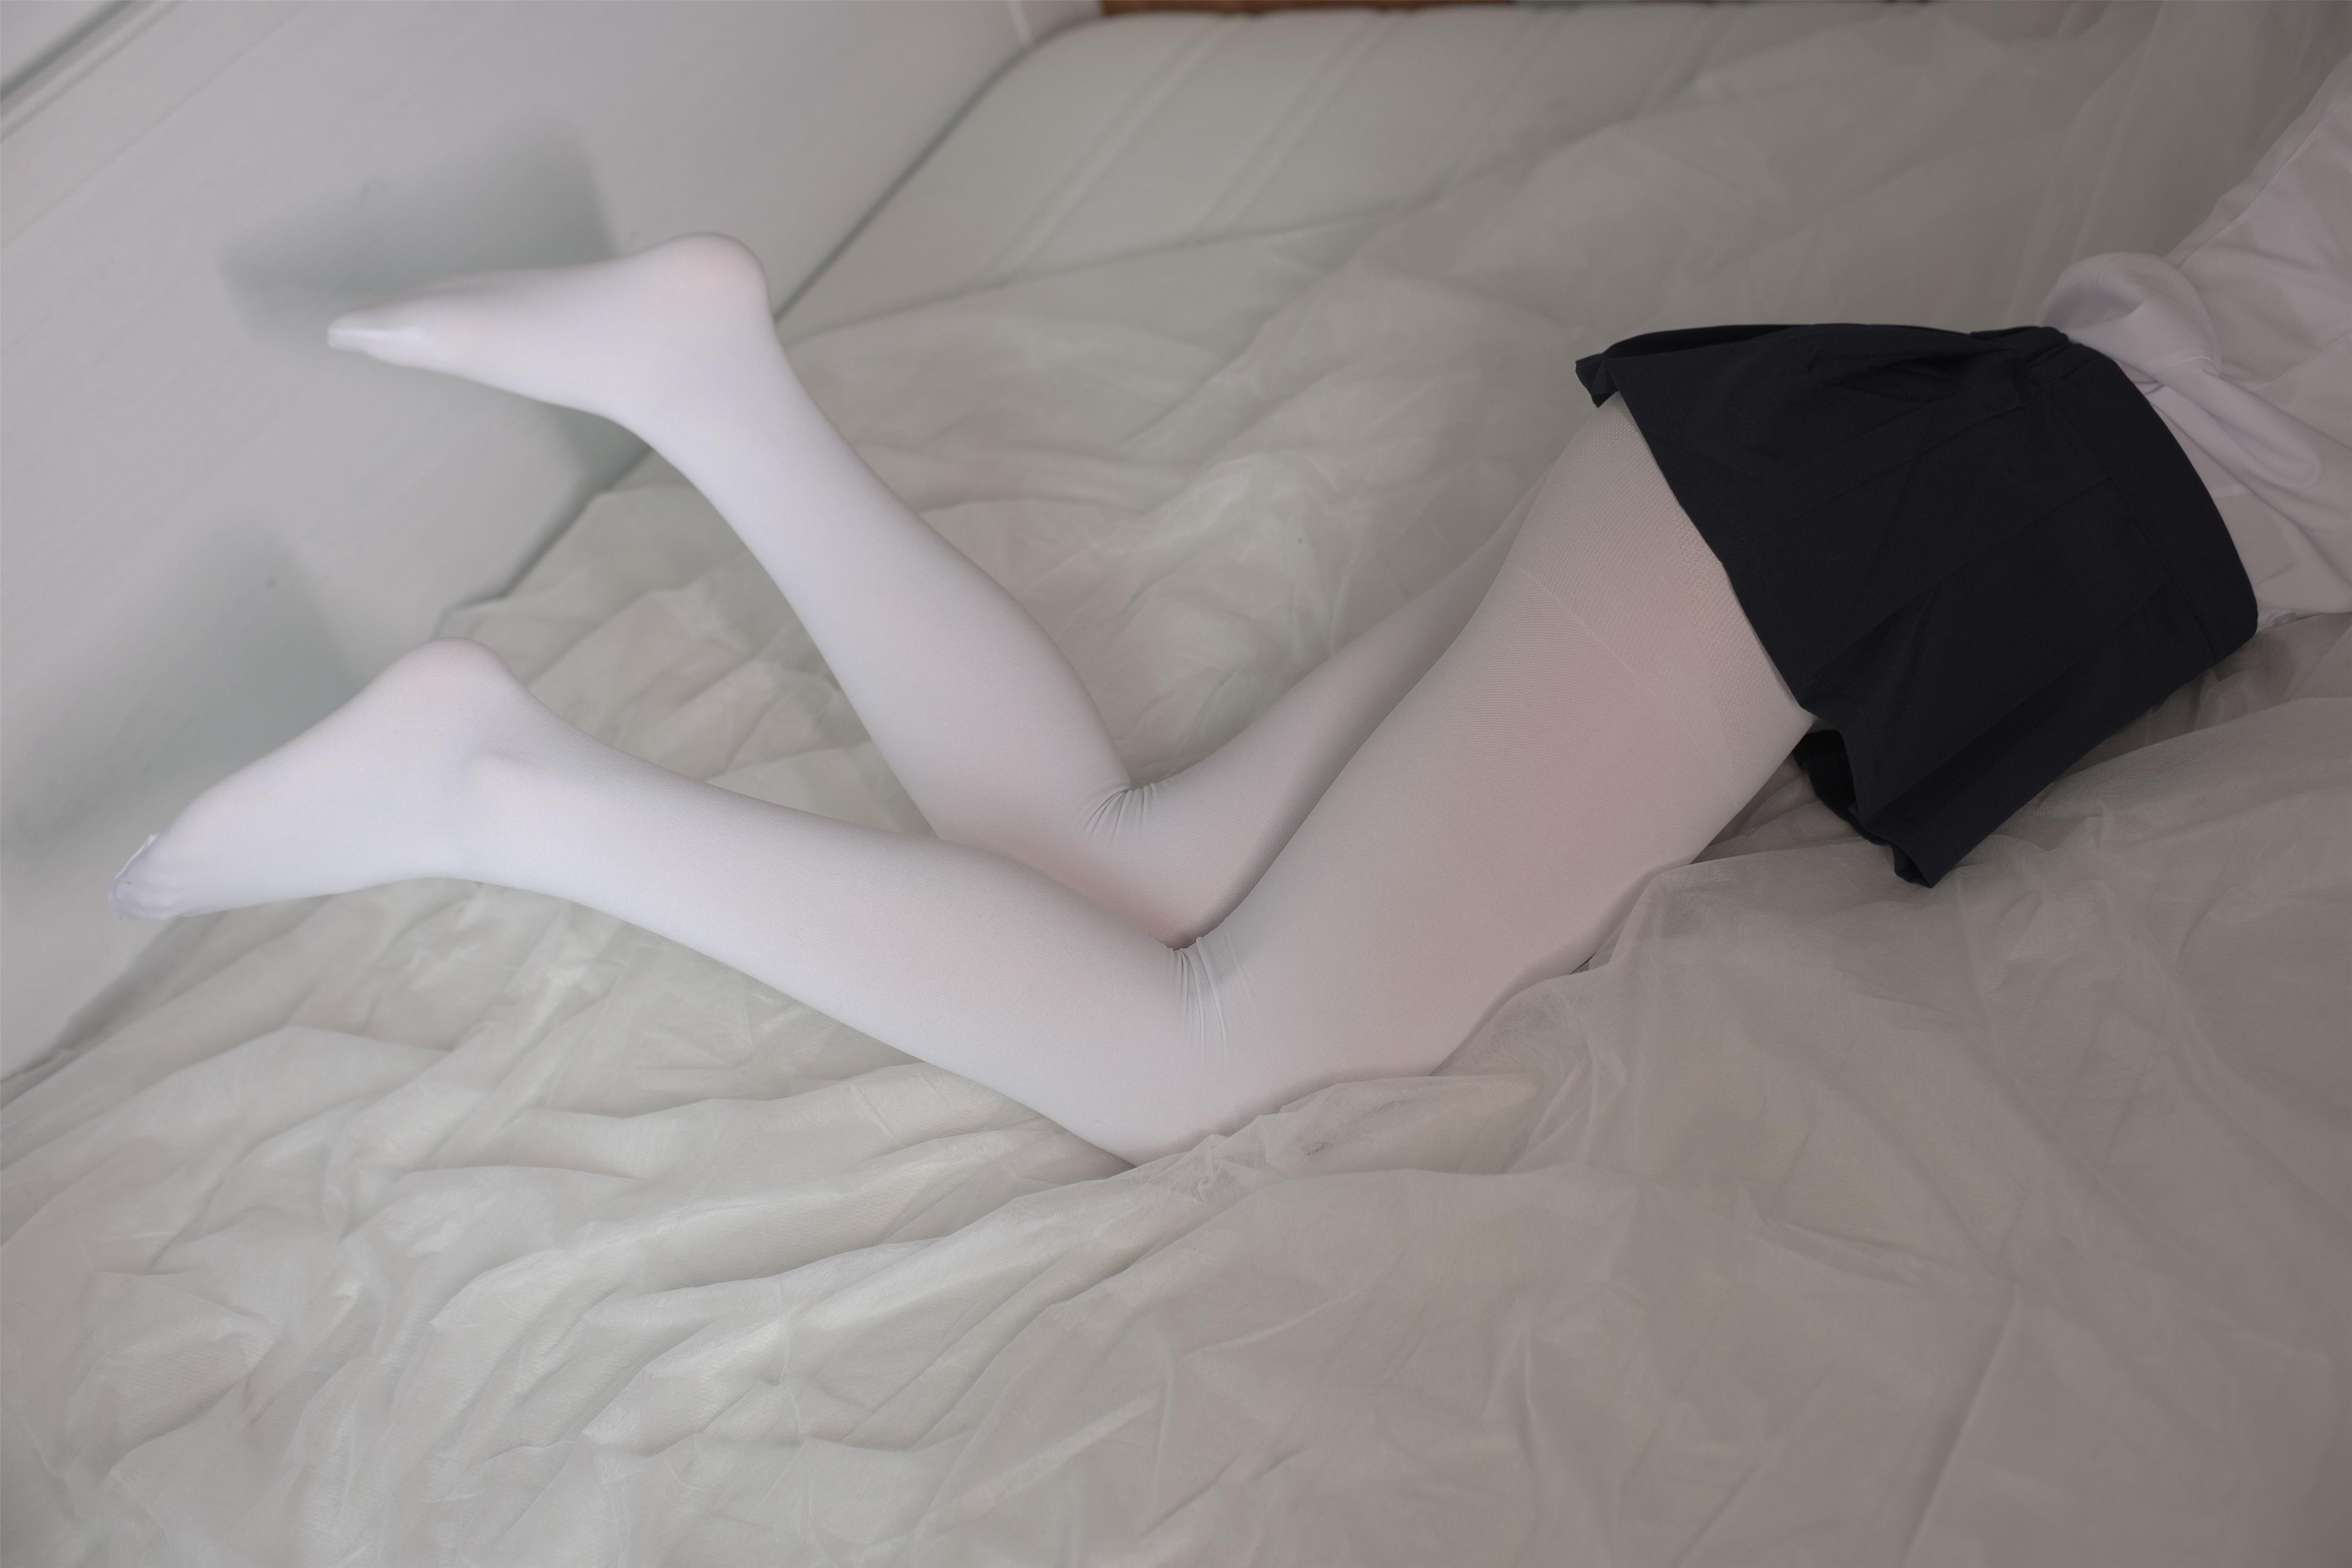 [森萝财团]X-034 性感小萝莉 白色短袖与蓝色短裙加白色丝袜美腿玉足私房写真集,